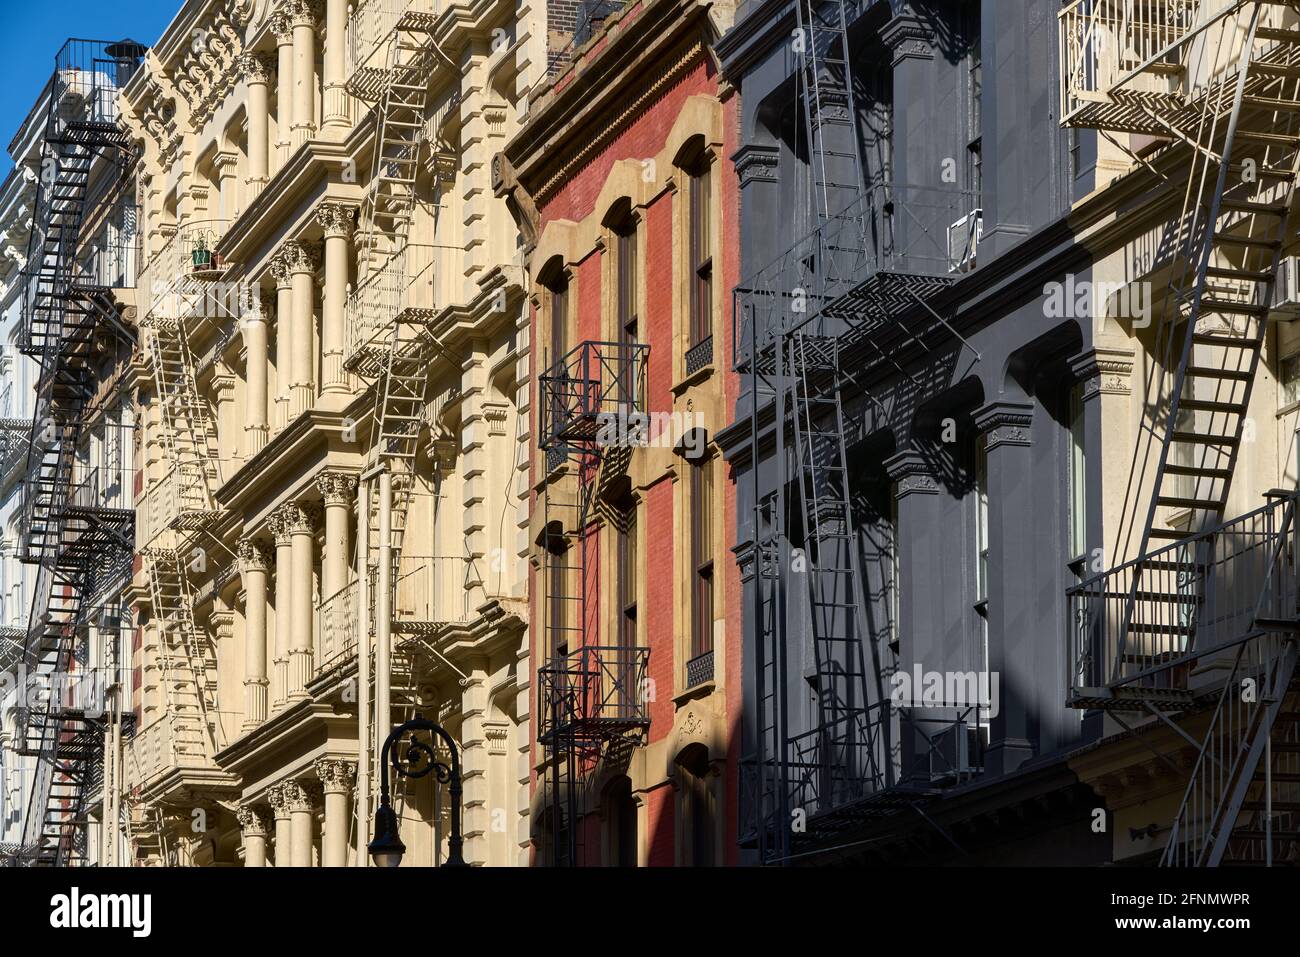 Façades de bâtiments typiques à SoHo, le quartier historique de la fonte avec architecture distincte de la fin du XIXe siècle. Lower Manhattan, New York, États-Unis Banque D'Images